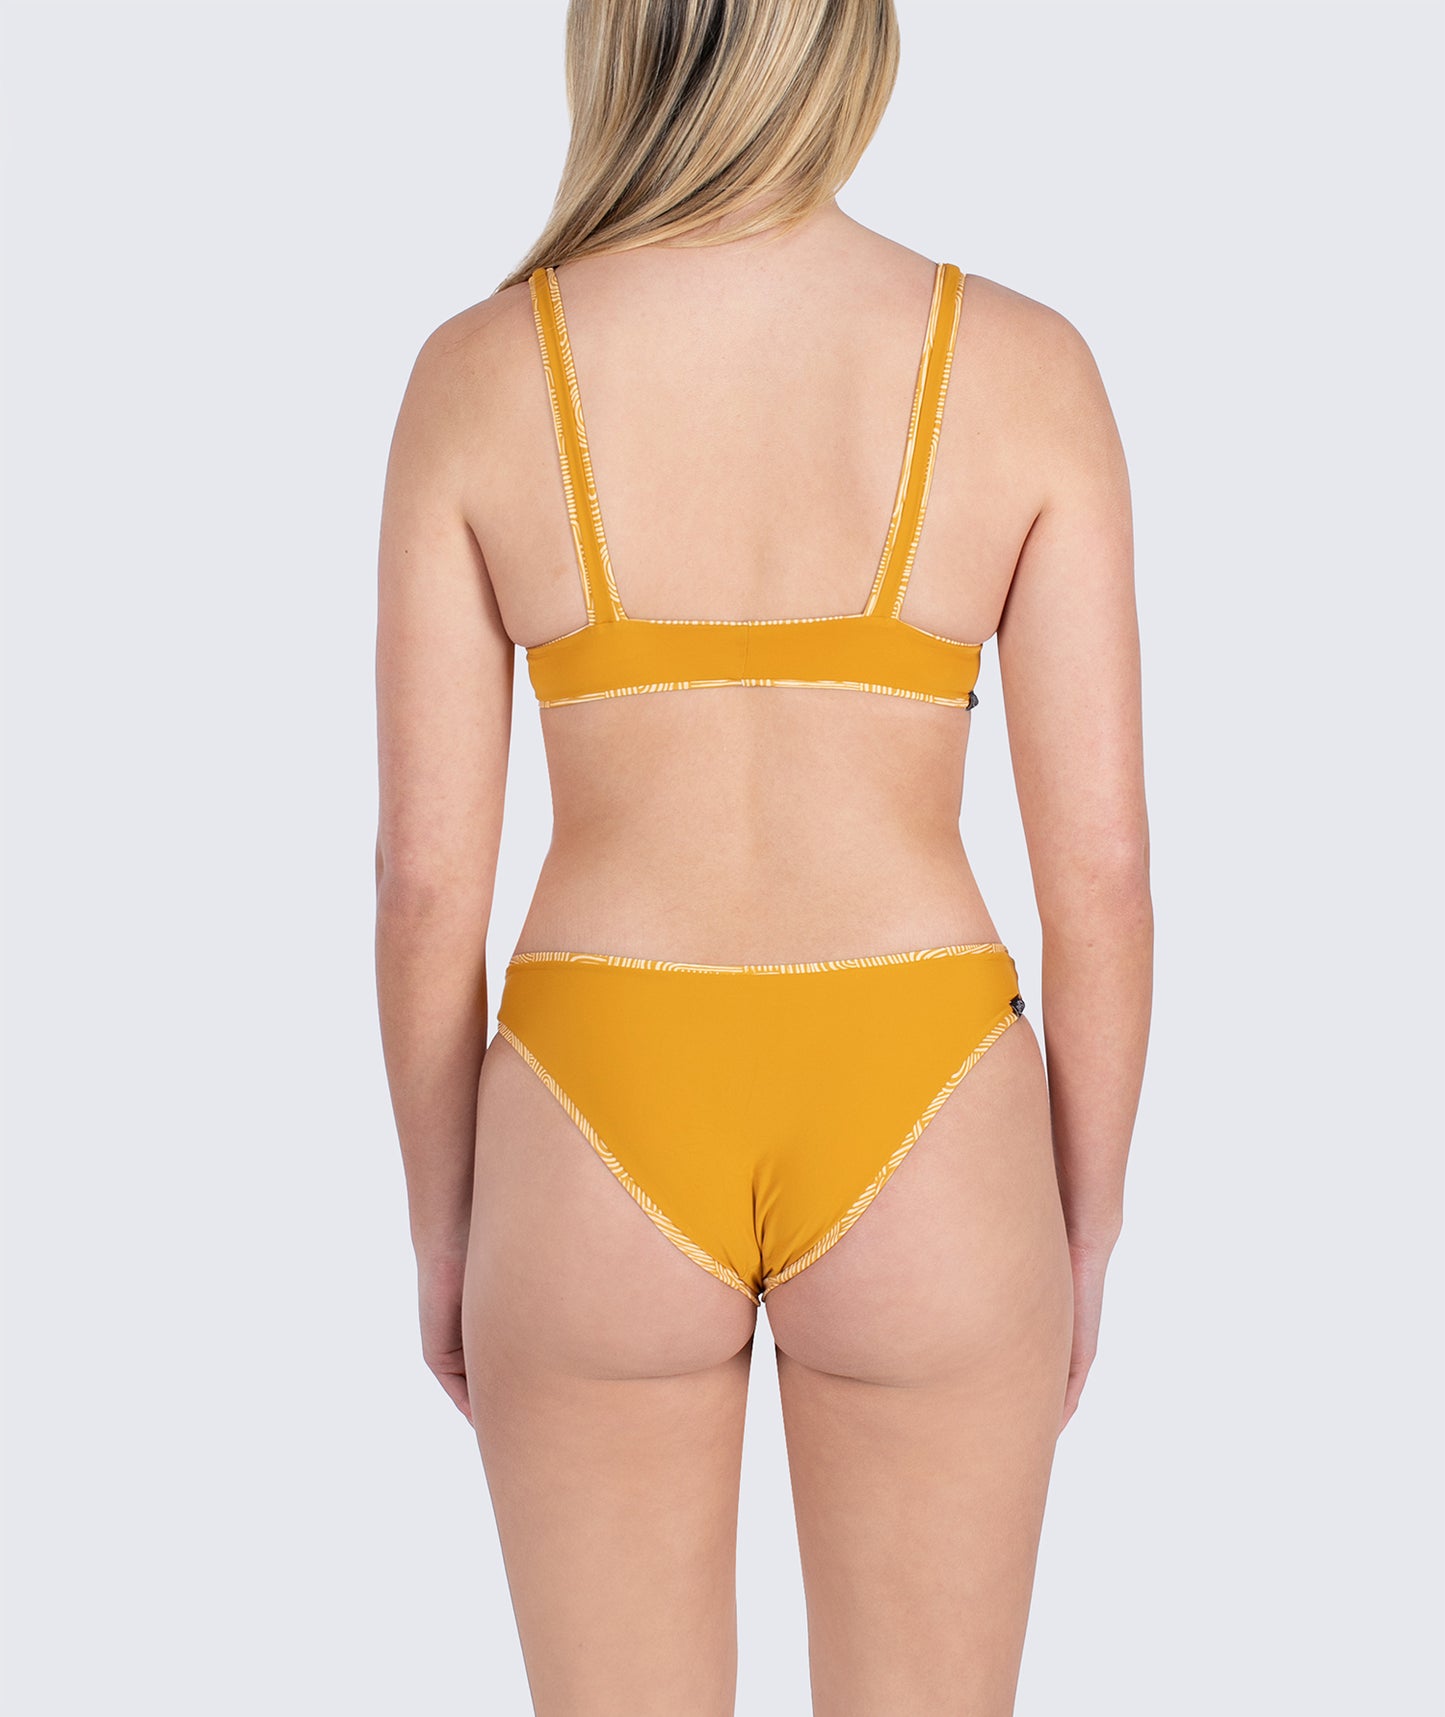 Claire Swim Top - Yellow